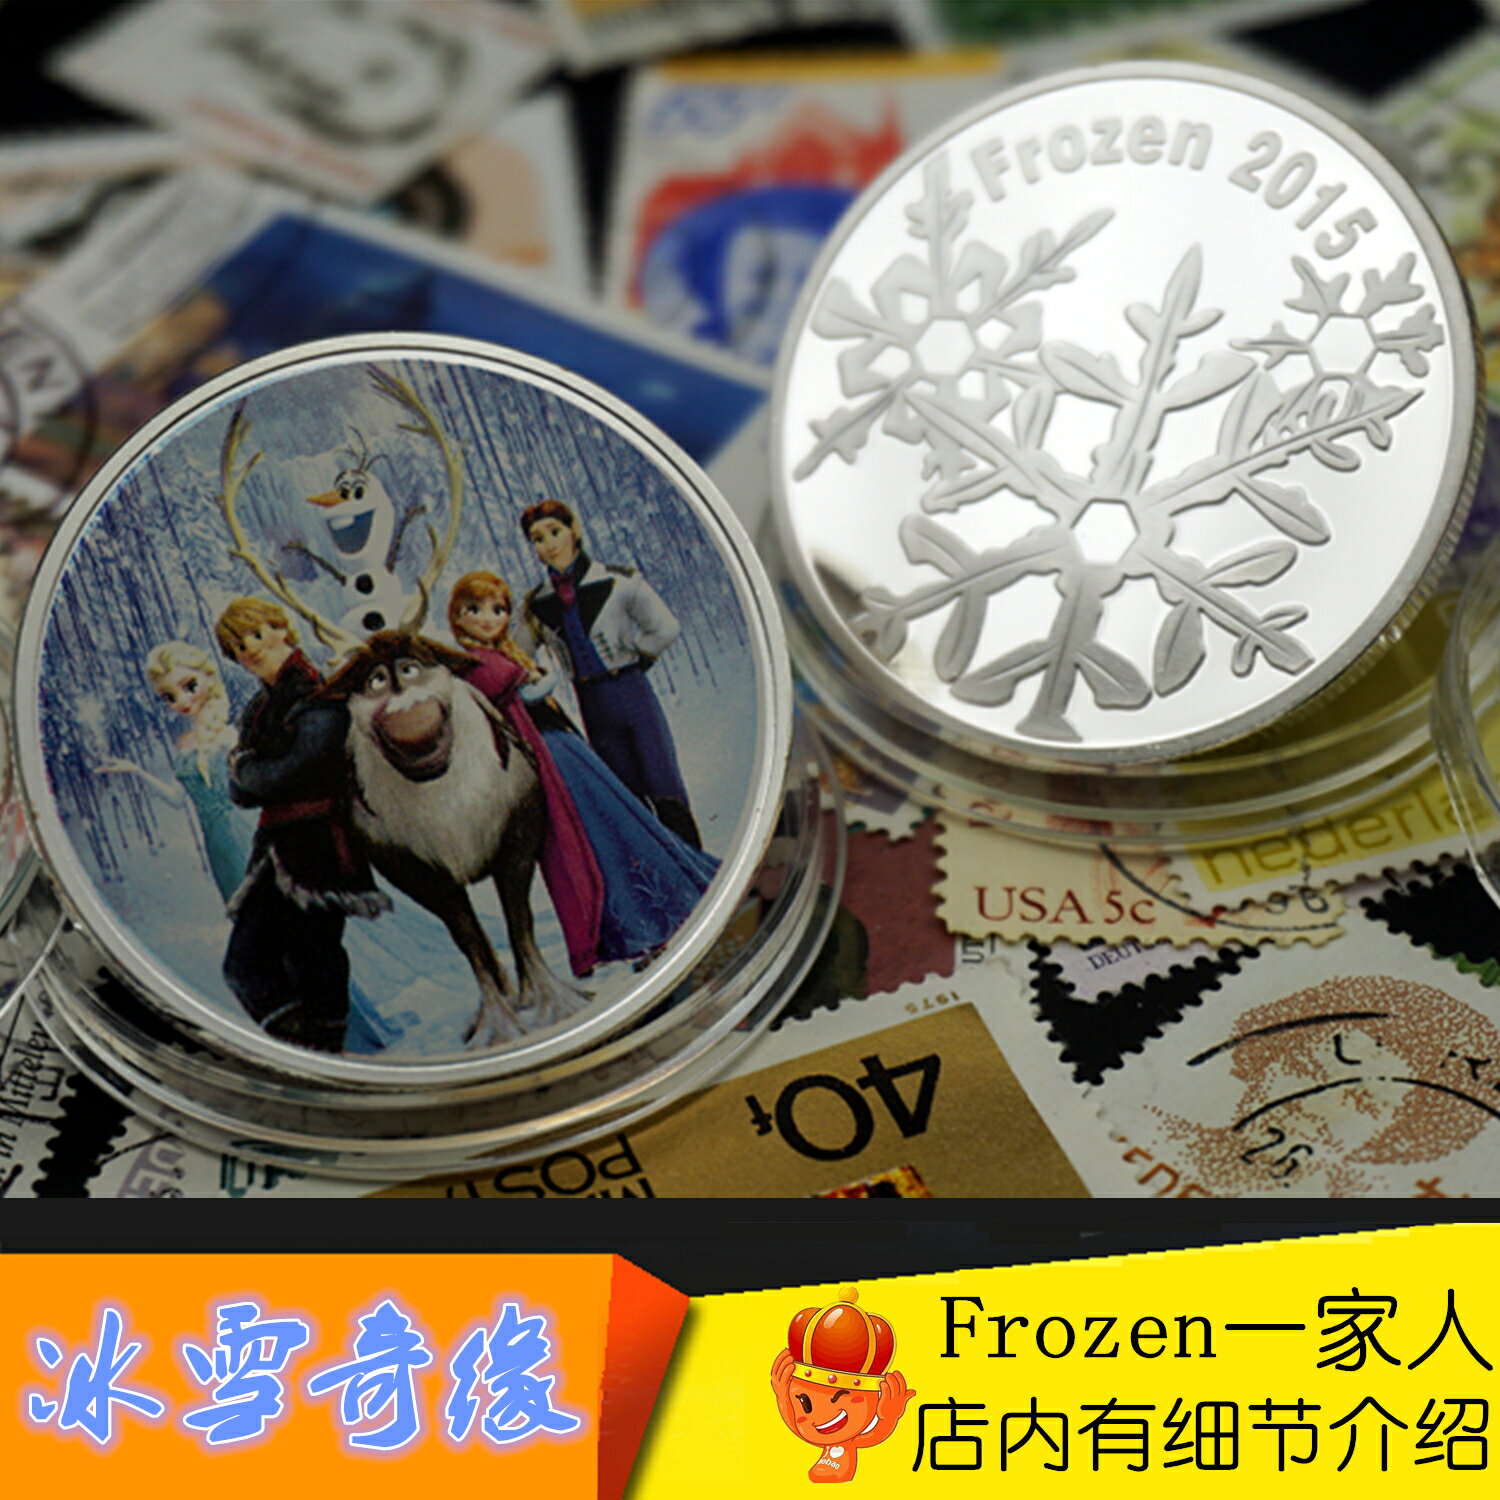 紐埃幣卡通金銀幣冰雪奇緣紀念章愛莎安娜公主紀念幣frozen一家人